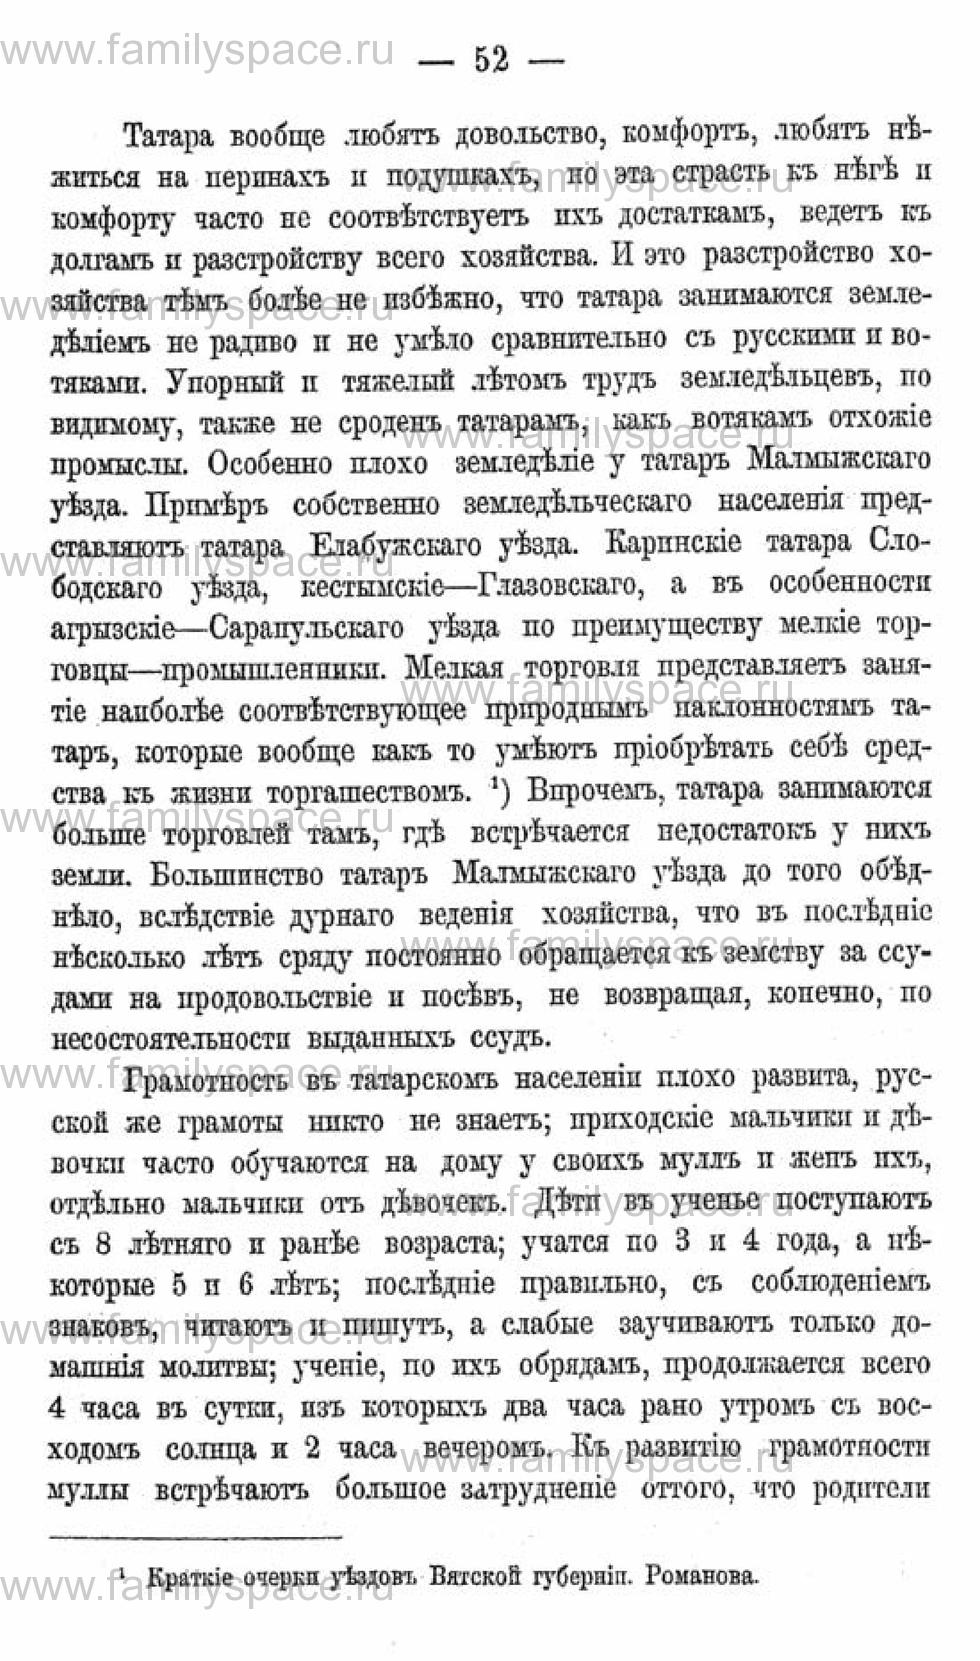 Поиск по фамилии - Календарь Вятской губернии - 1880, страница 2052